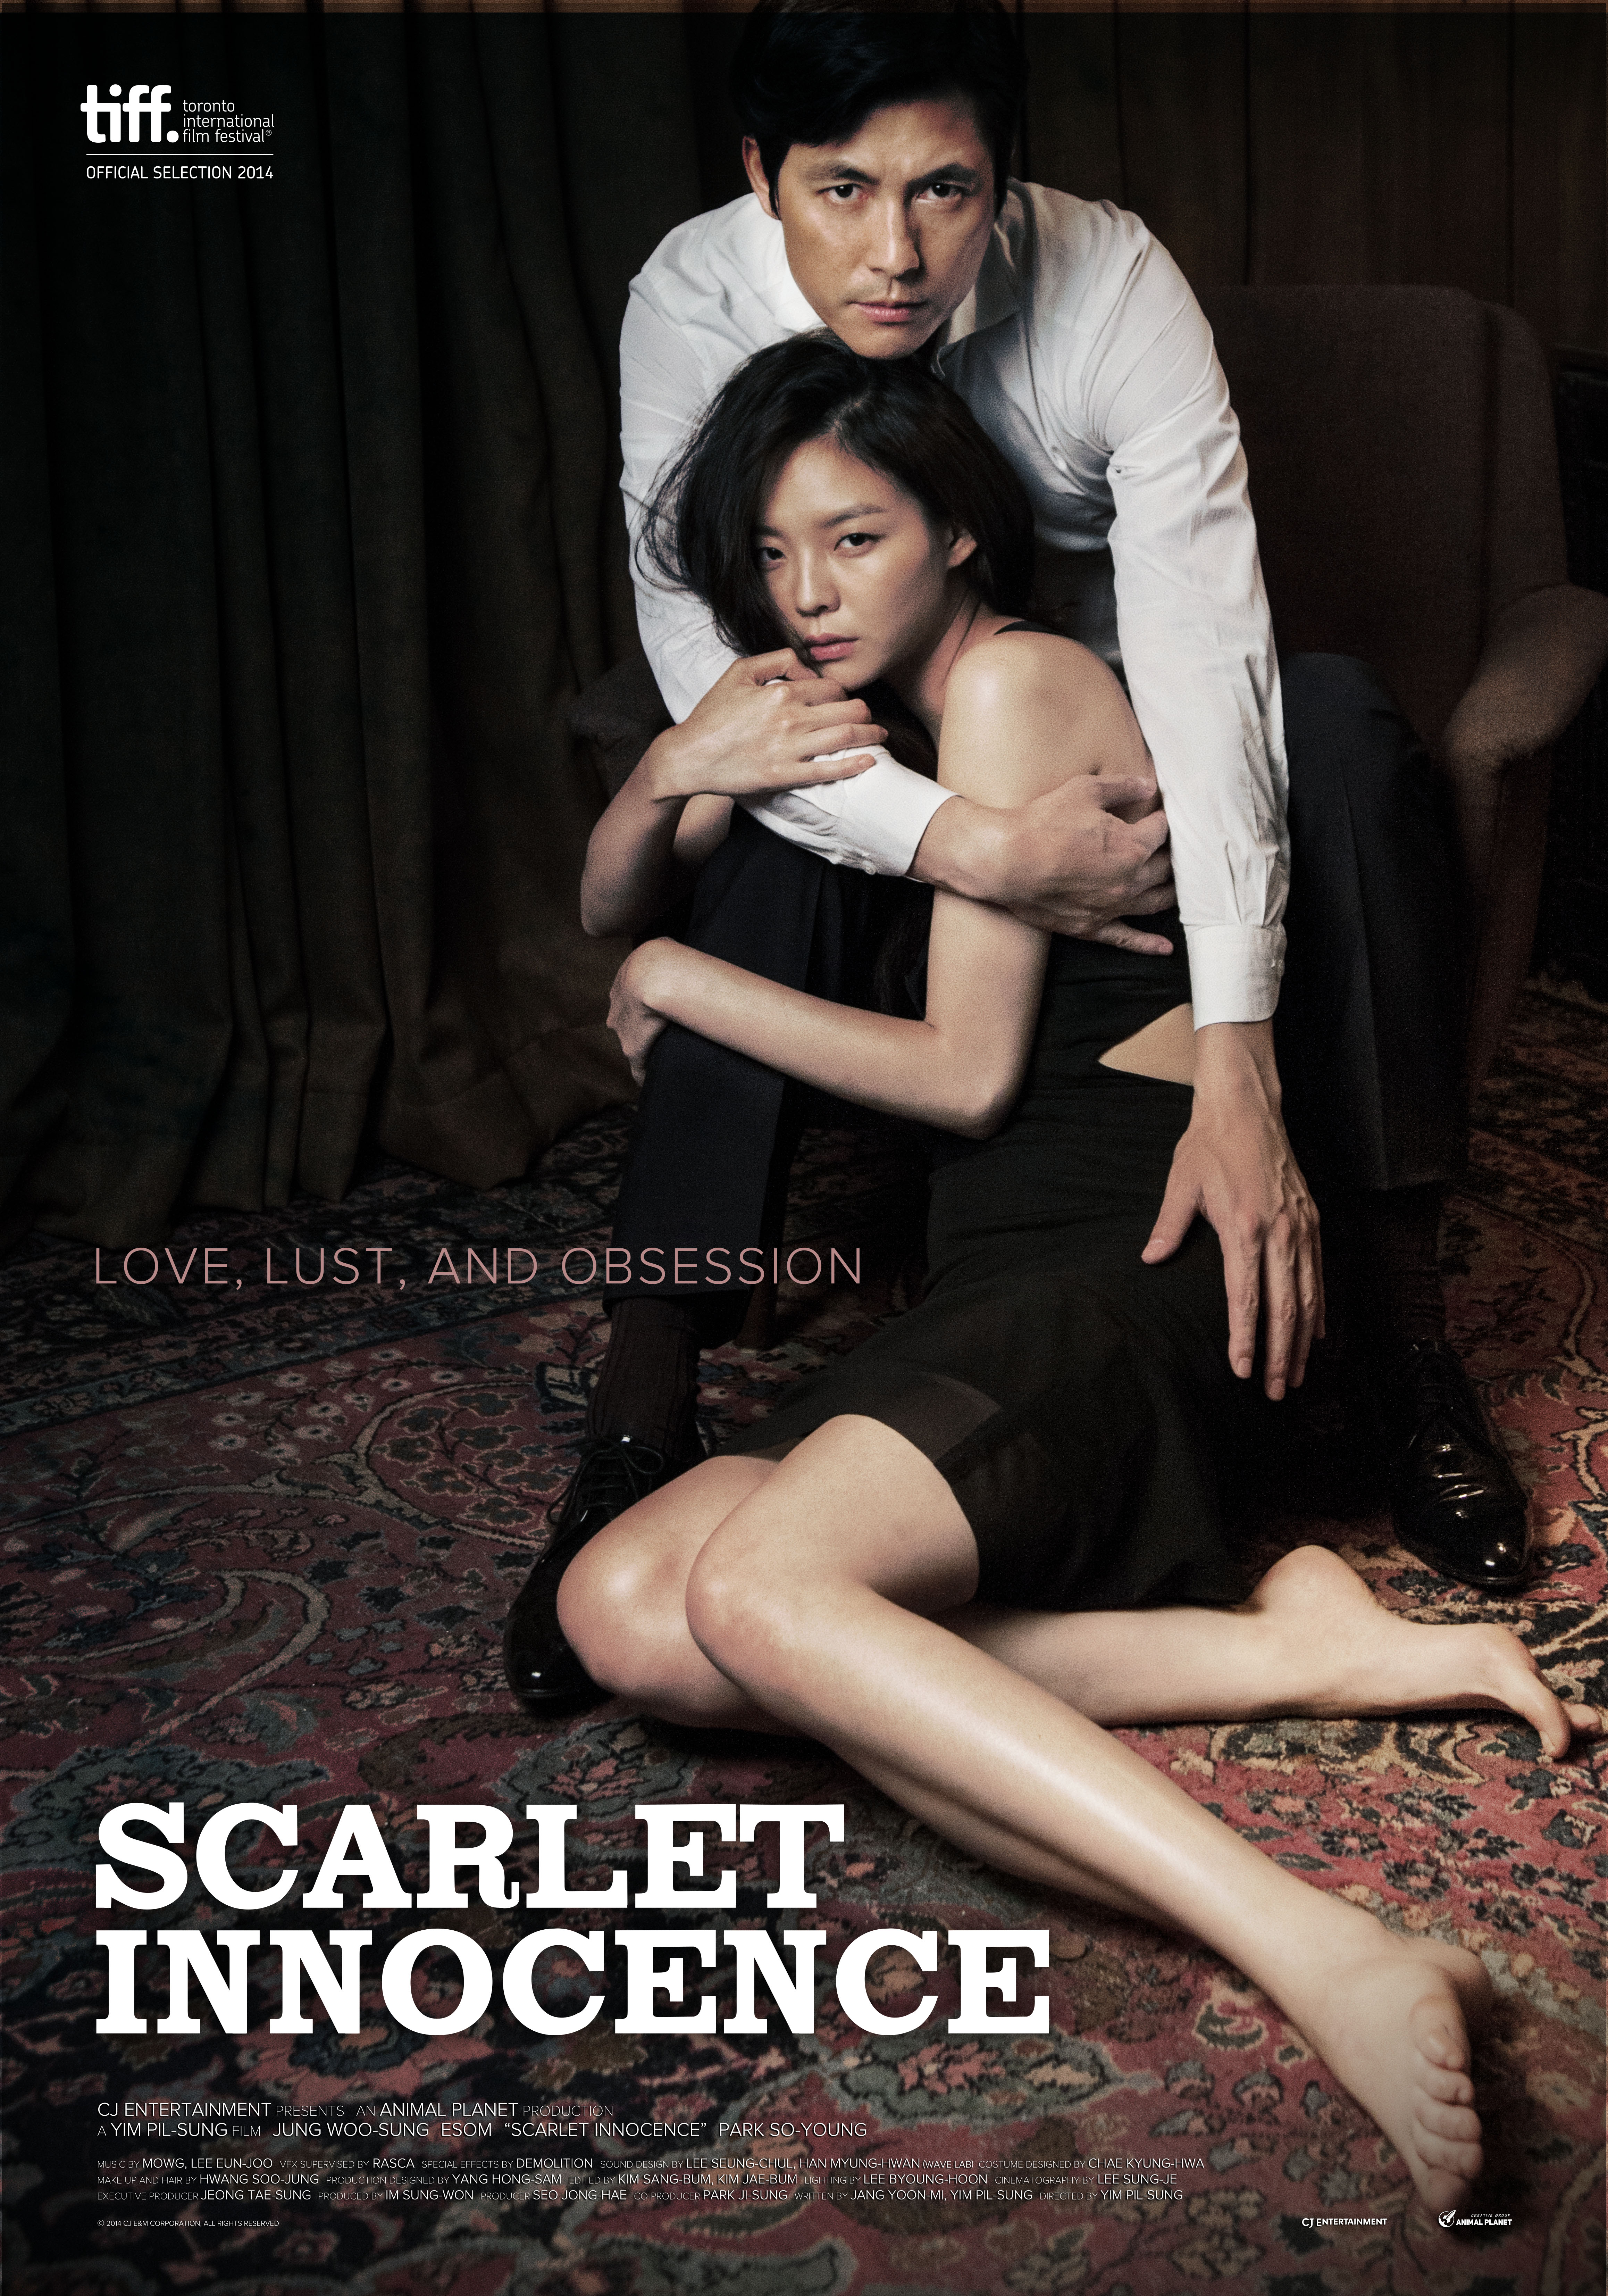 Má Hồng Thơ Ngây – Scarlet Innocence (2014) Full HD Vietsub